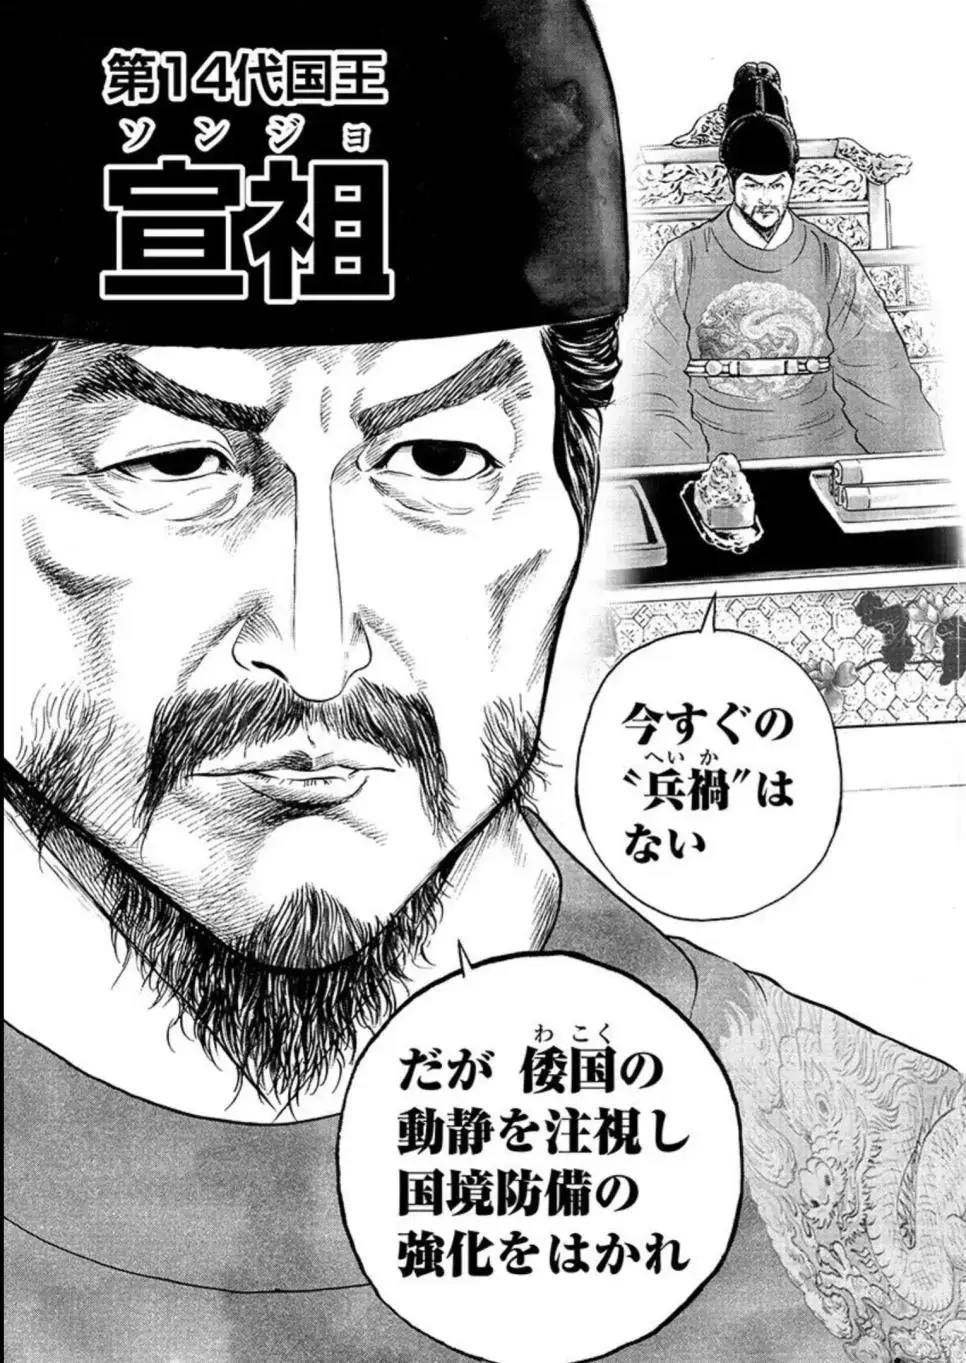 도요토미 히데요시 시기를 다룬 일본 만화 근황 | mbong.kr 엠봉